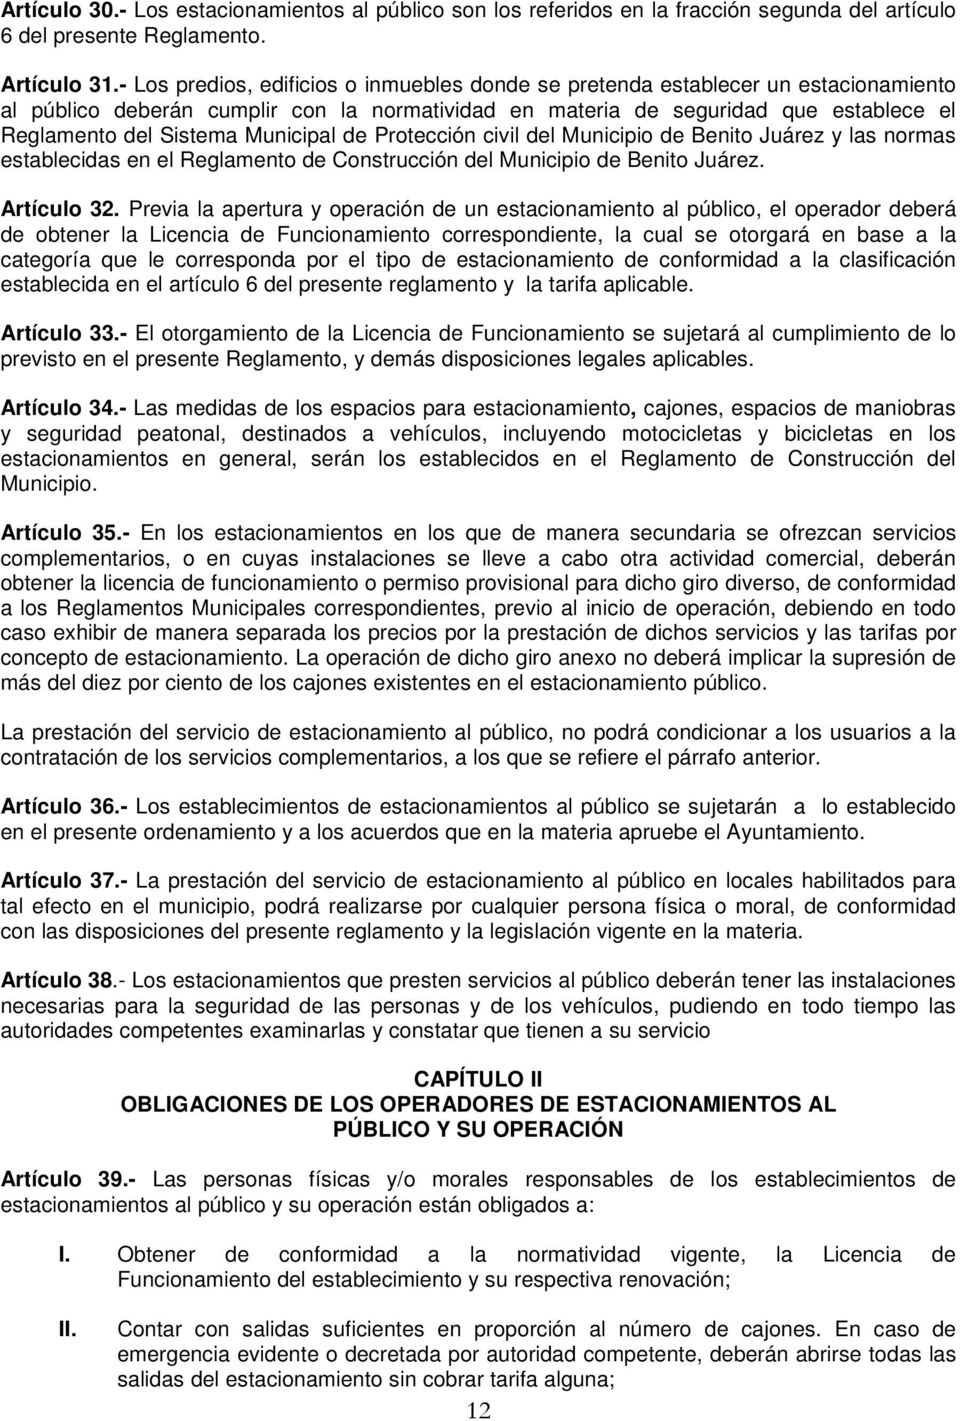 Municipal de Protección civil del Municipio de Benito Juárez y las normas establecidas en el Reglamento de Construcción del Municipio de Benito Juárez. Artículo 32.